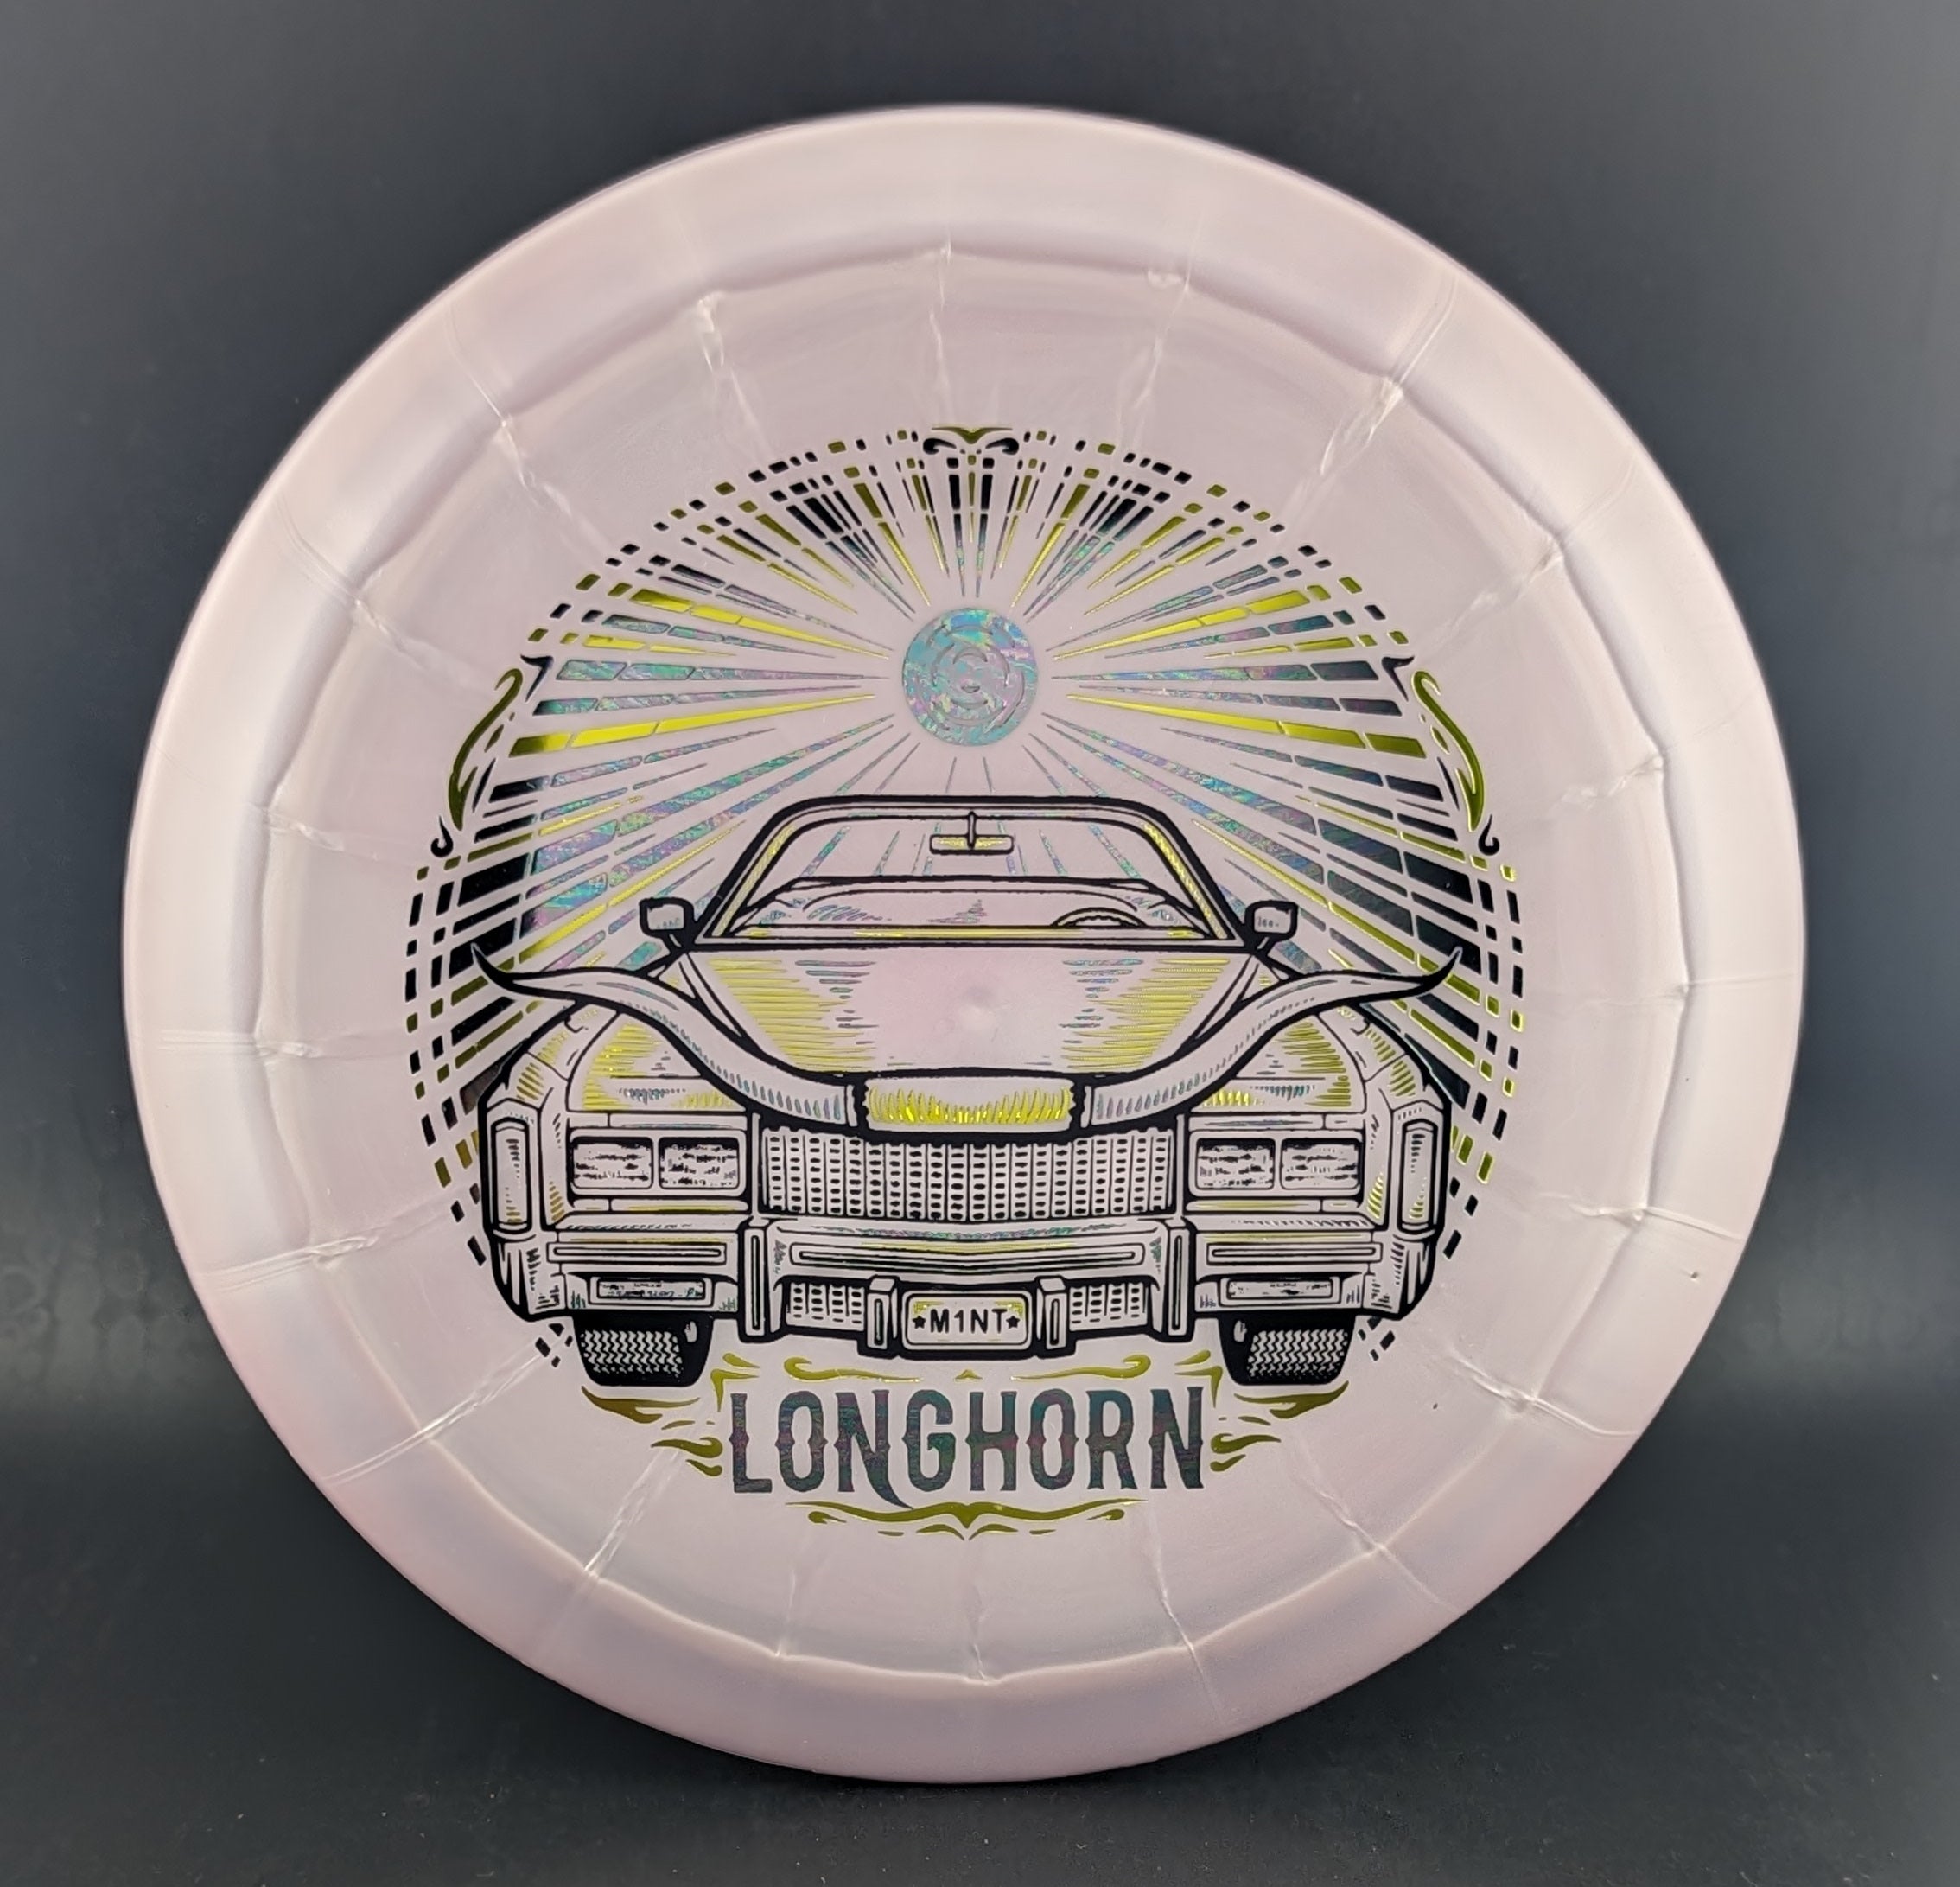 Mint Discs Sublime Longhorn - 0